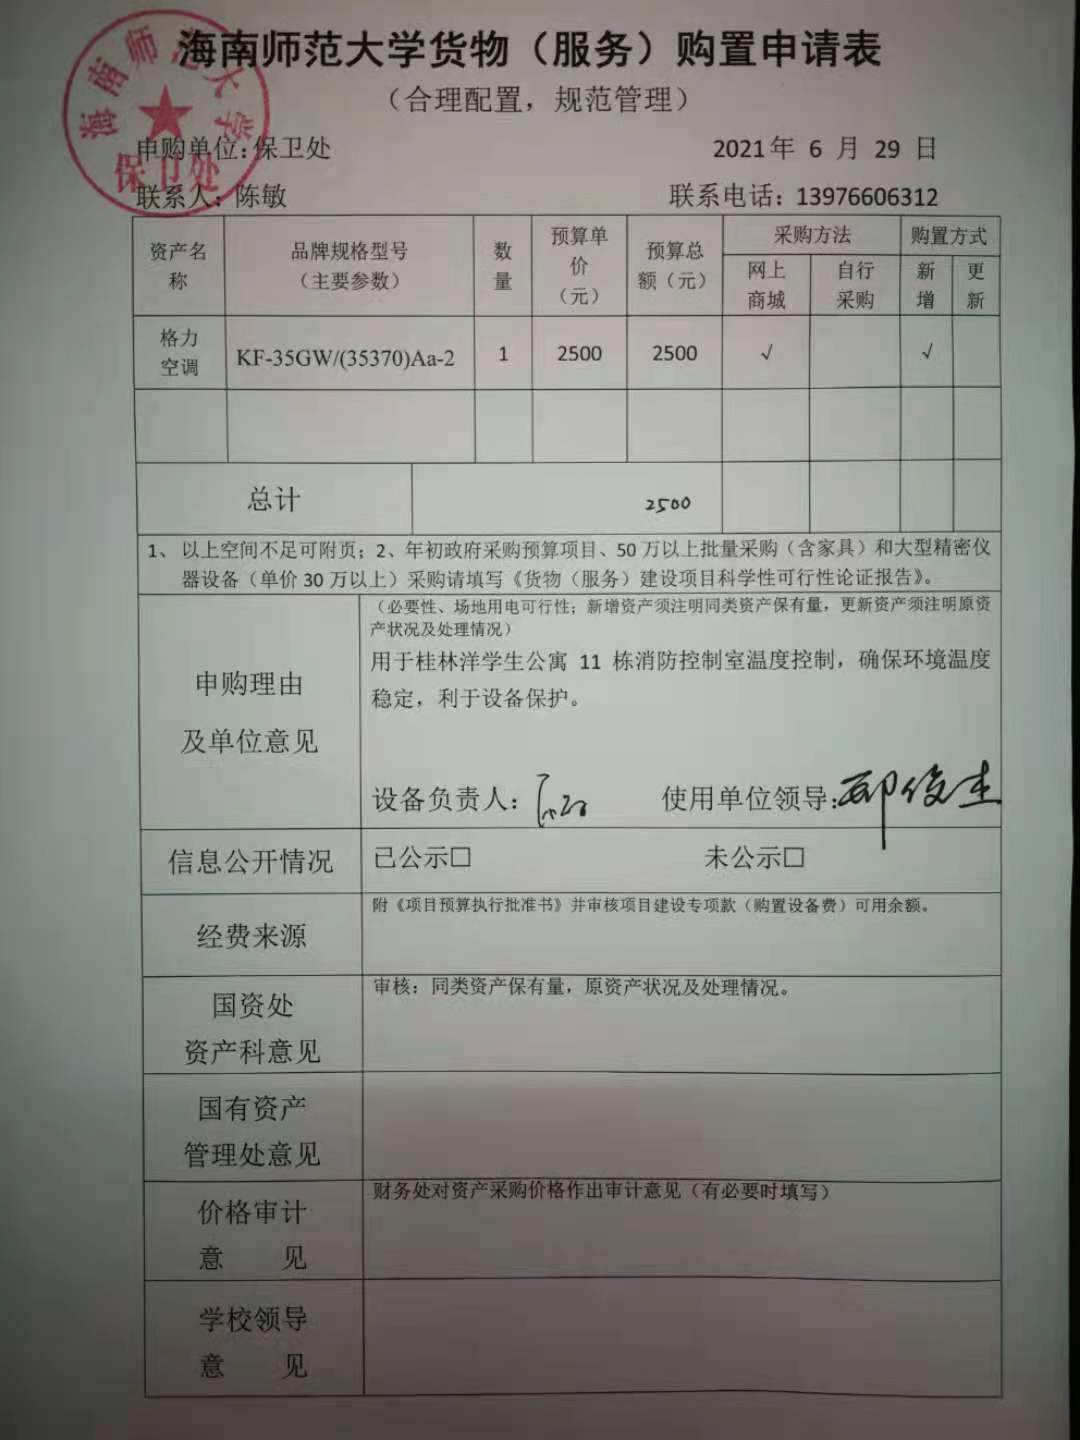 桂林洋学生宿舍11栋消防控制室空调采购公示